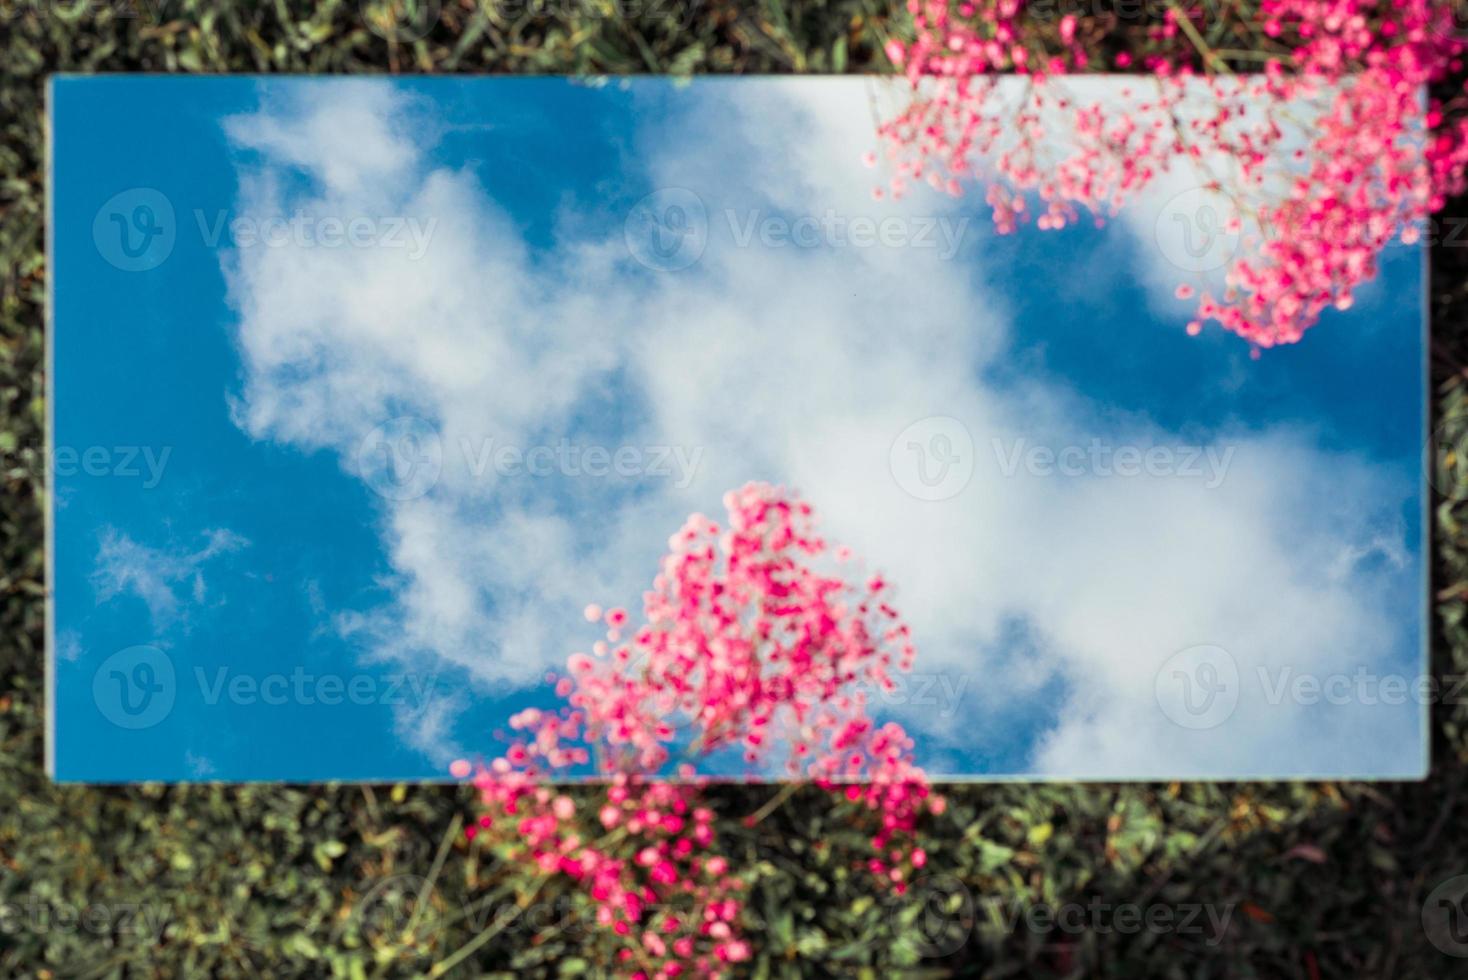 fantastisk lägenhet låg med himlen på en spegel rosa blommor och gräs foto